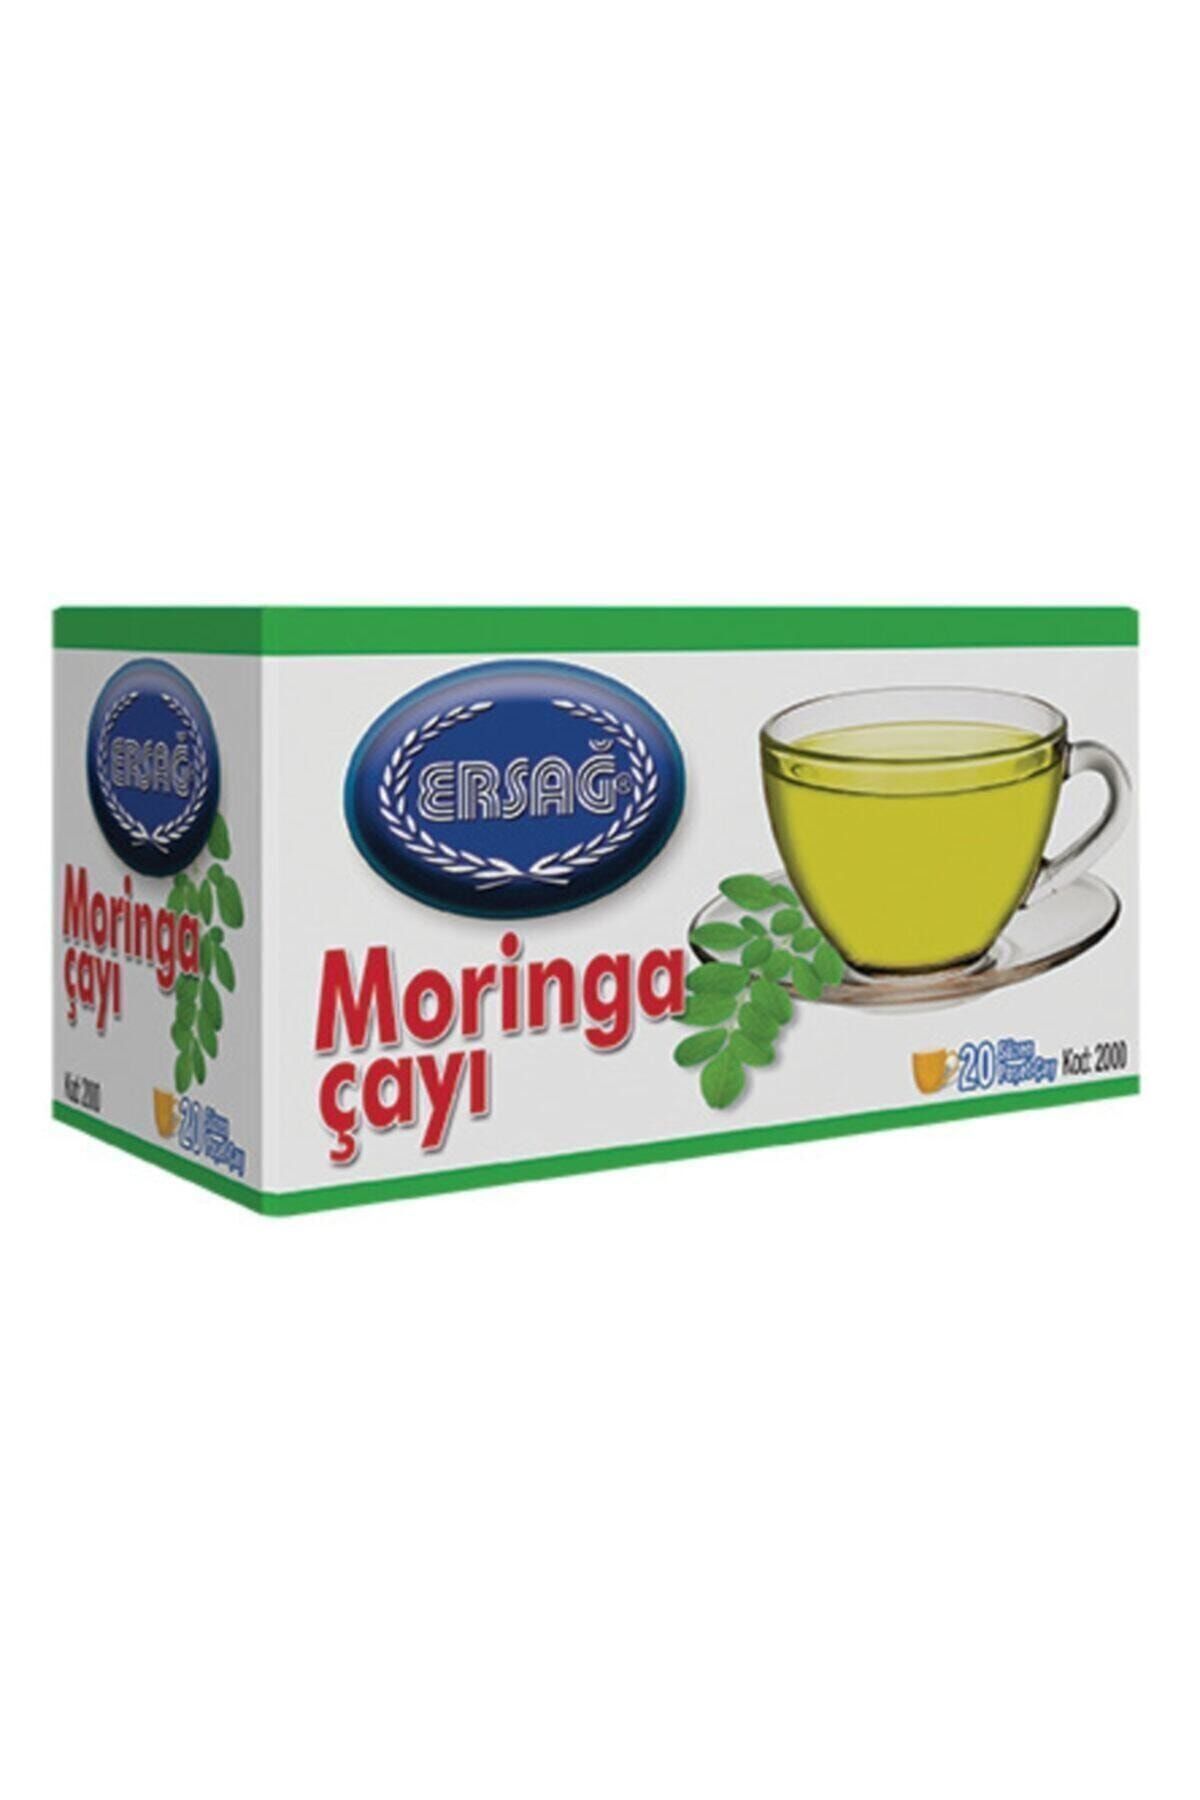 Ersağ Moringa Çayı Saf Ve Doğal 20 Poşet